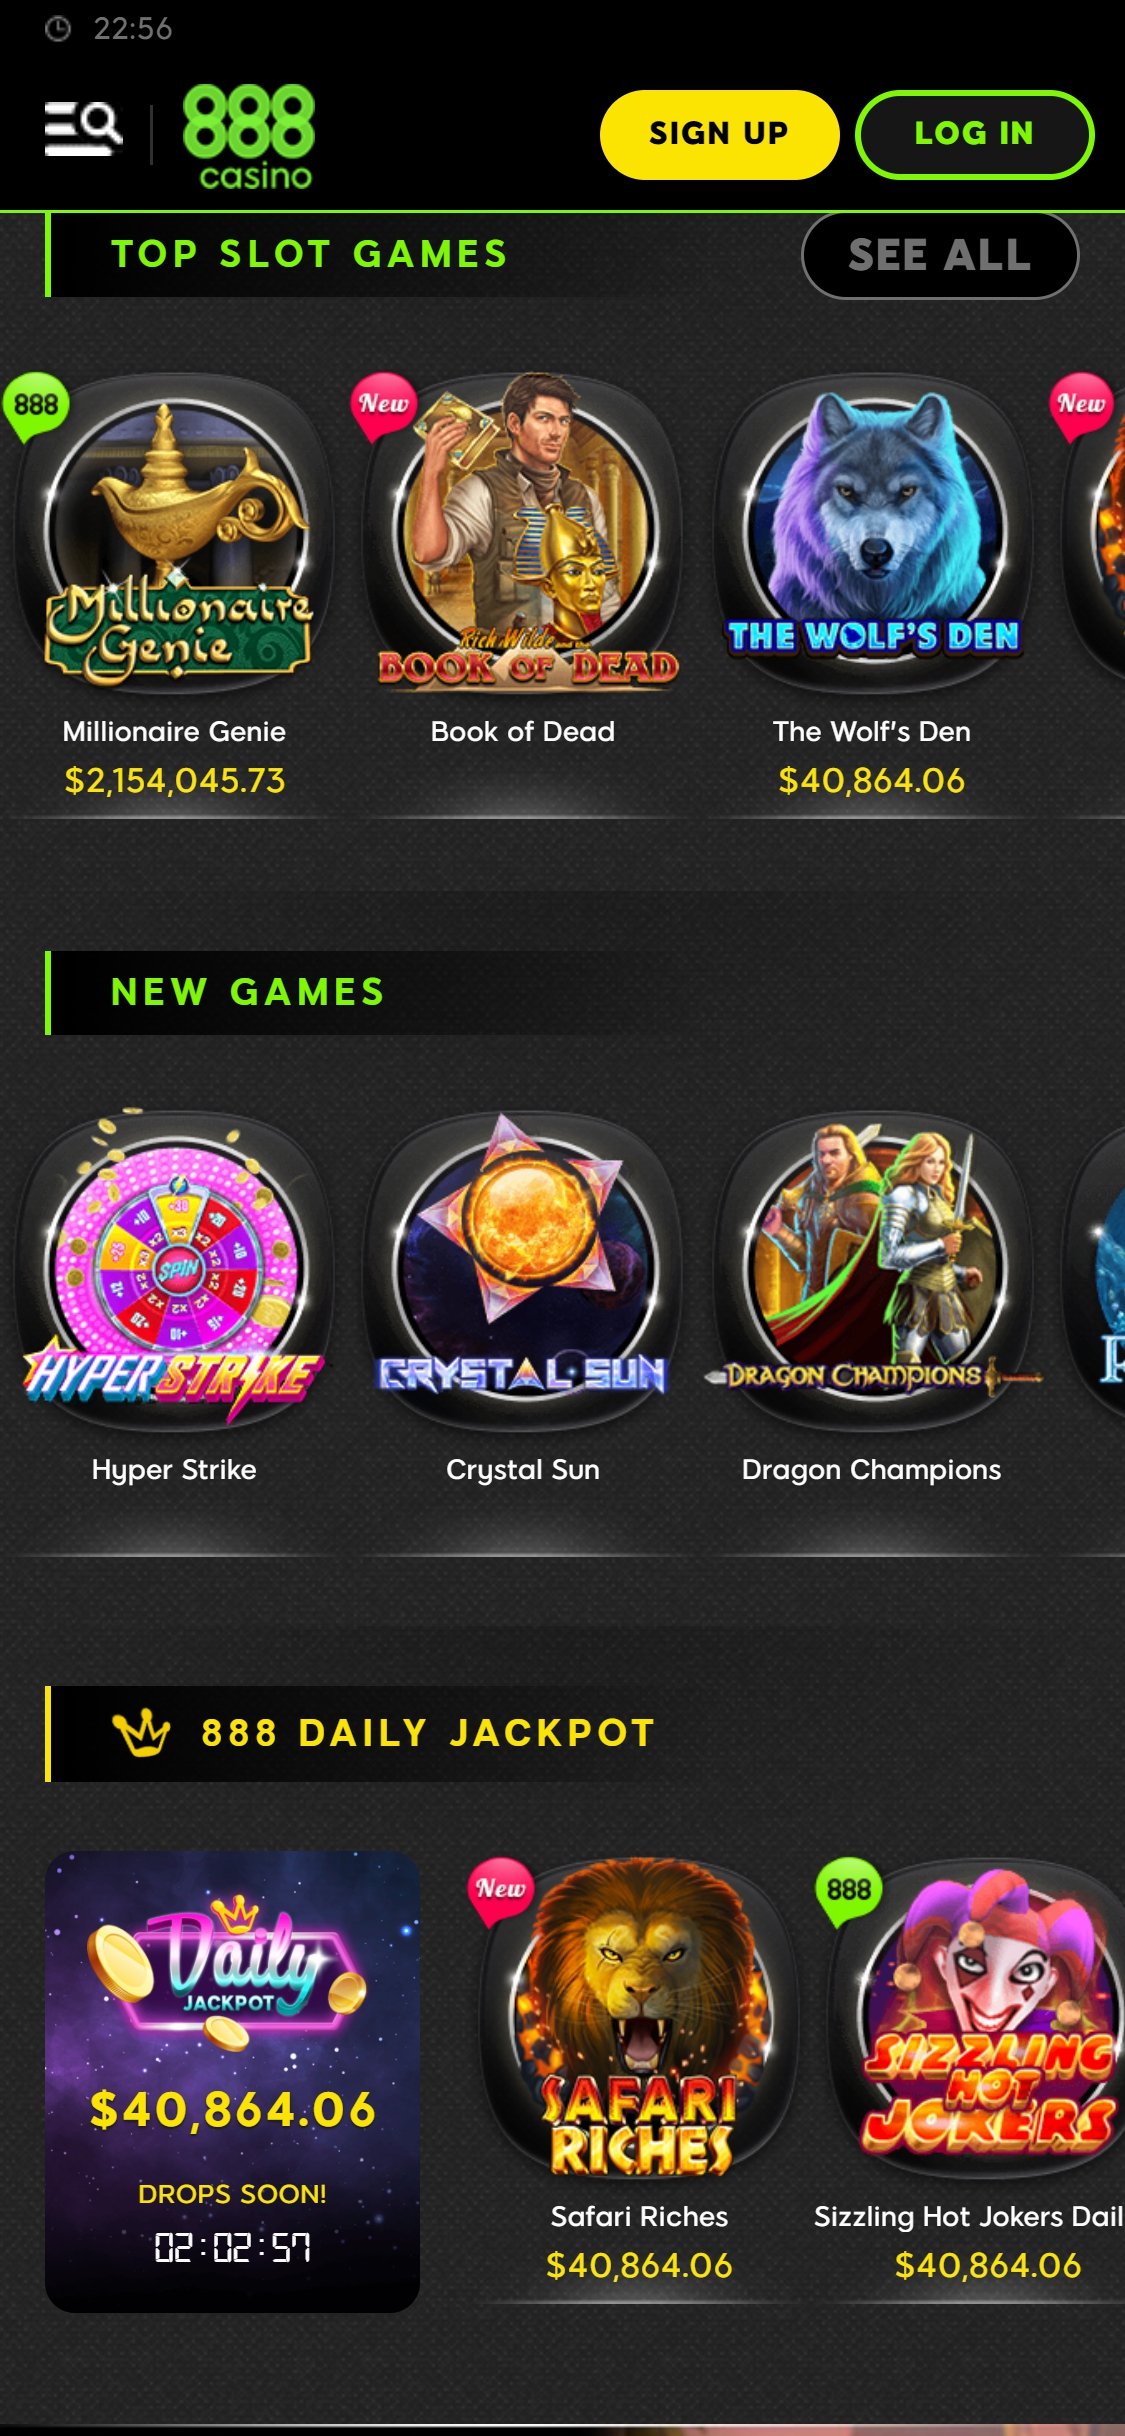 888.com Casino Mobile Games Review